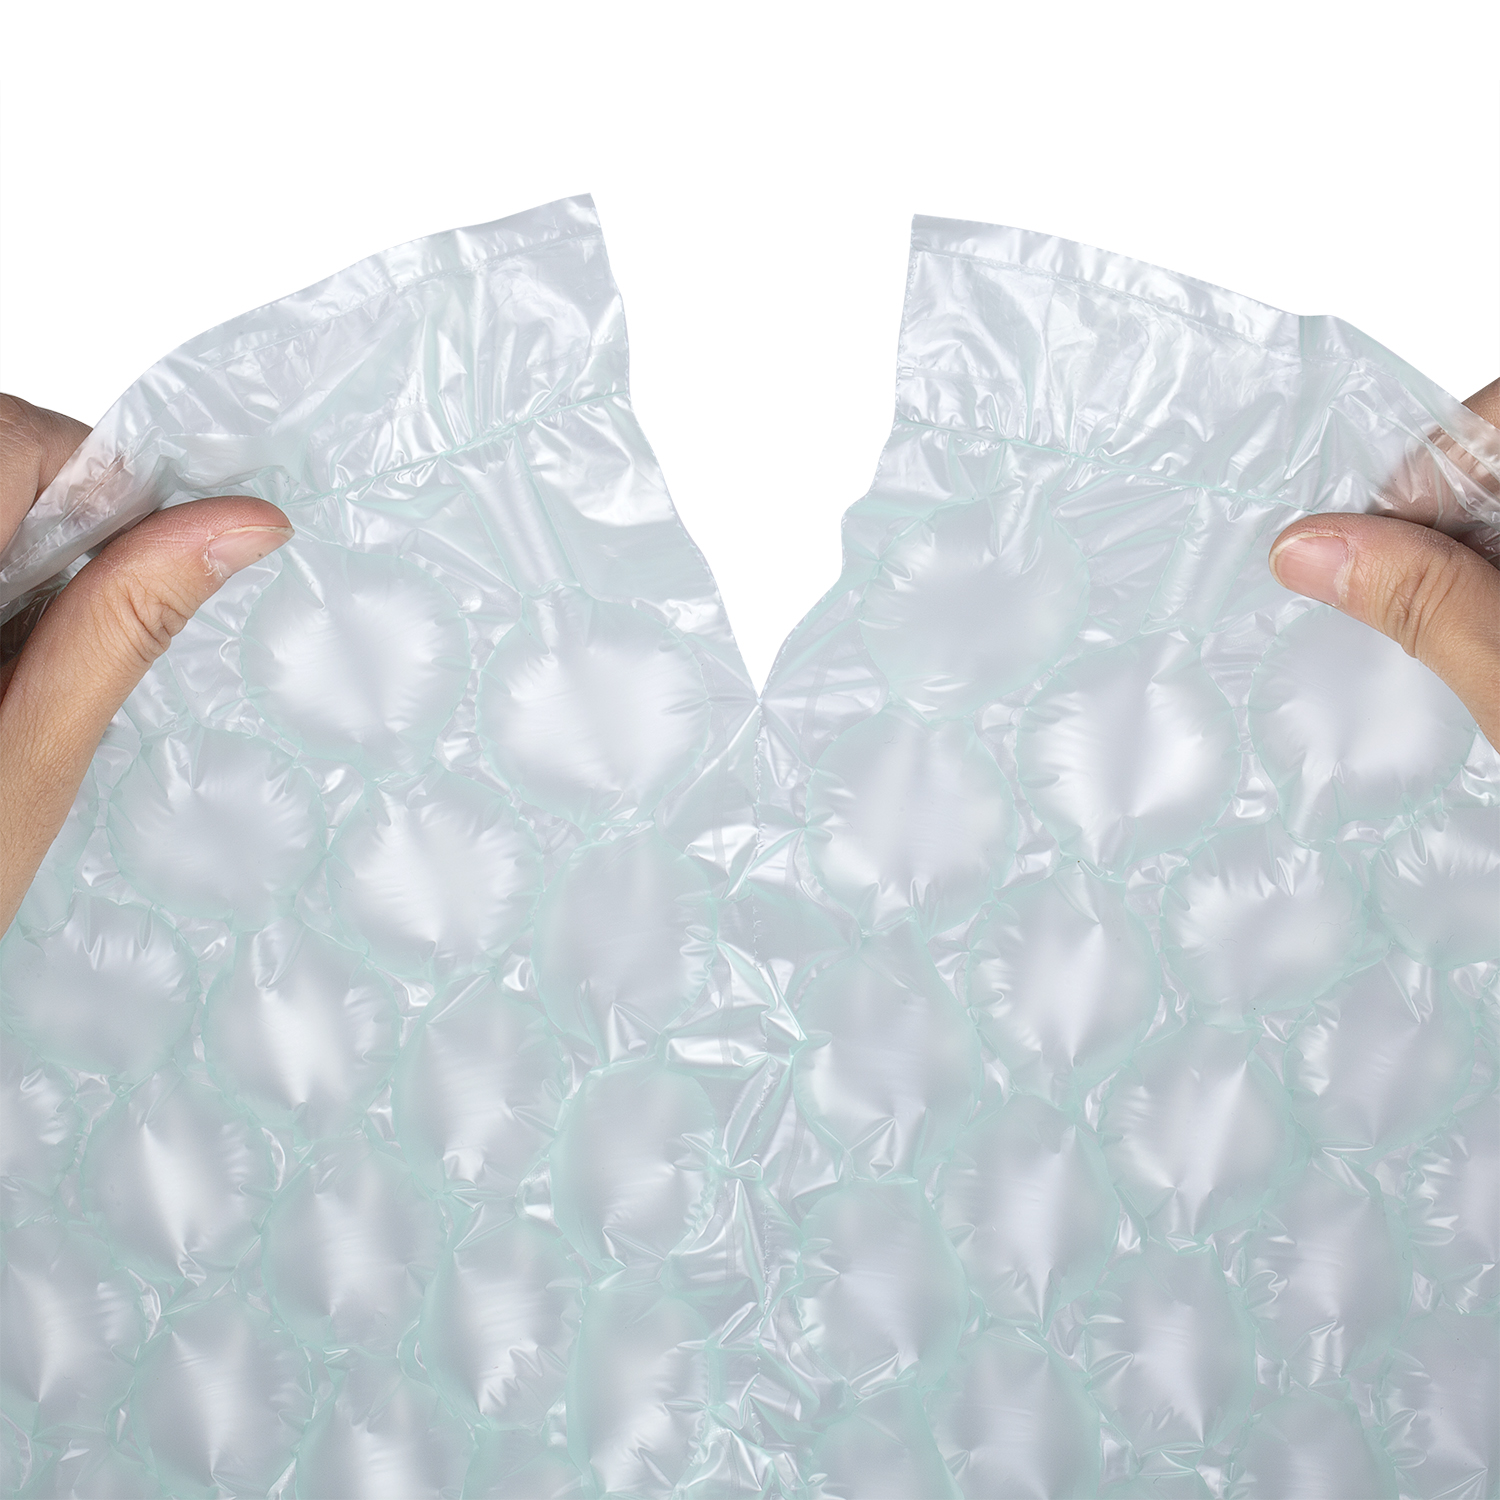 Bolsa de colchón de aire transparente a prueba de humedad para alimentos